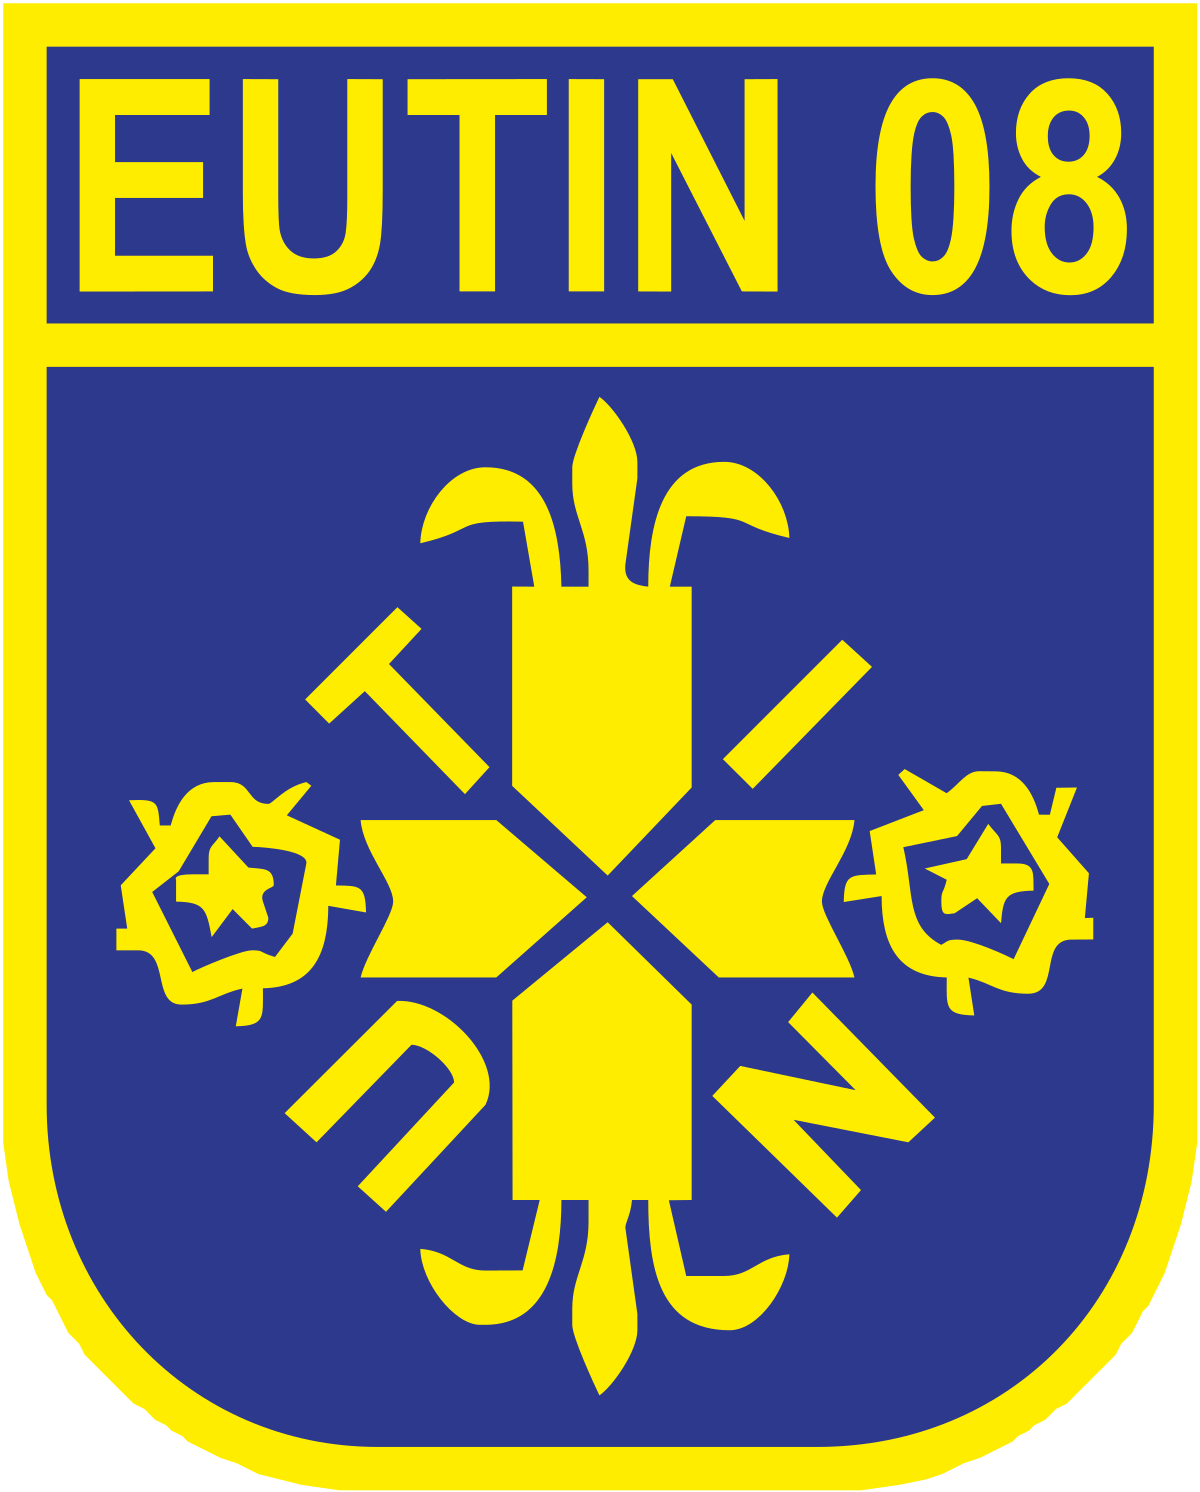 Eutin 08 logo